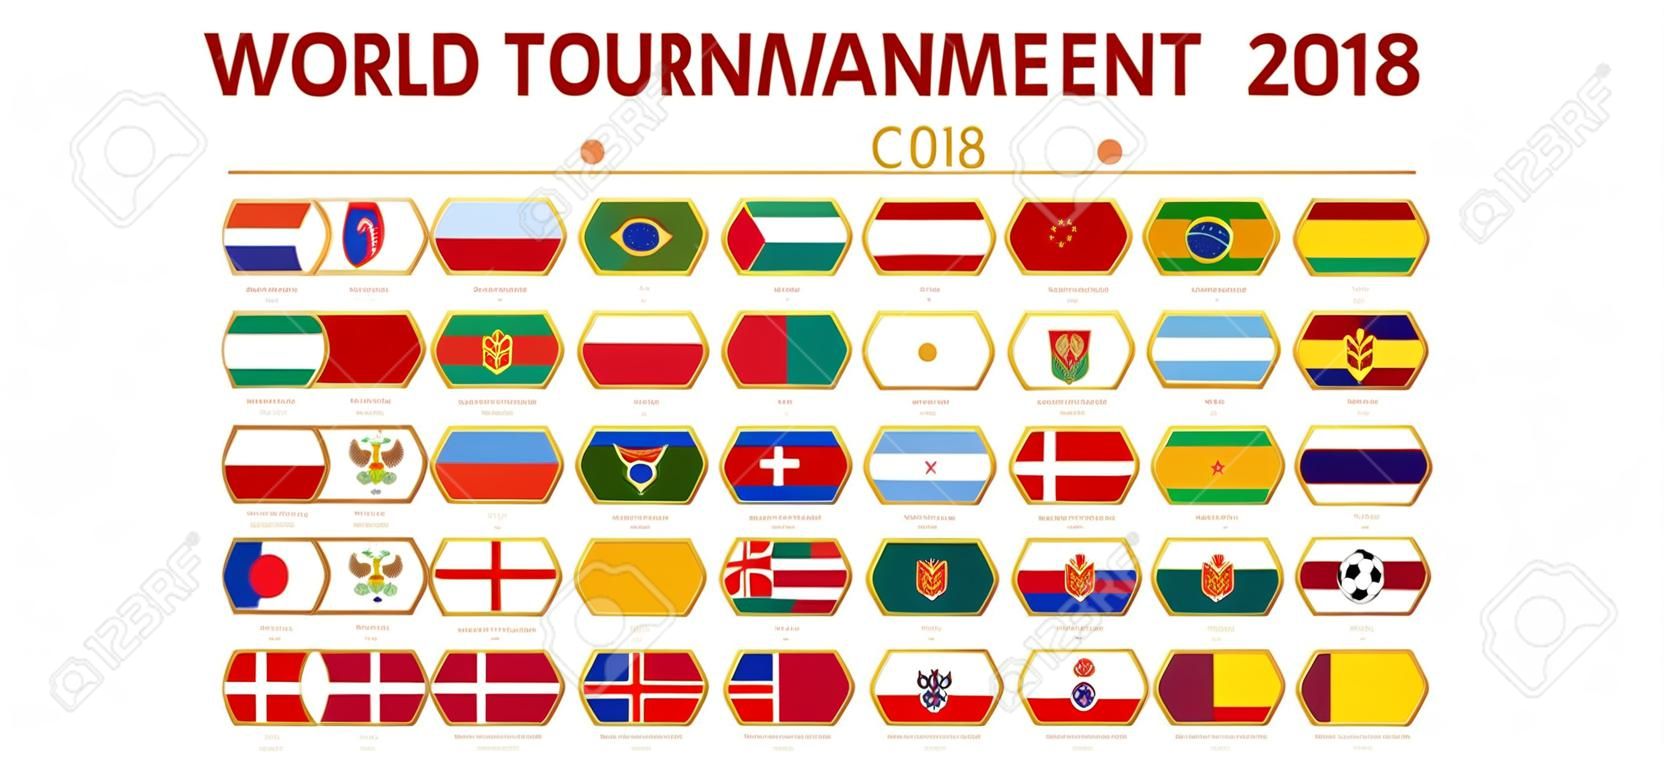 Światowy turniej piłki nożnej 2018 w Rosji, flagi wszystkich uczestników według grup